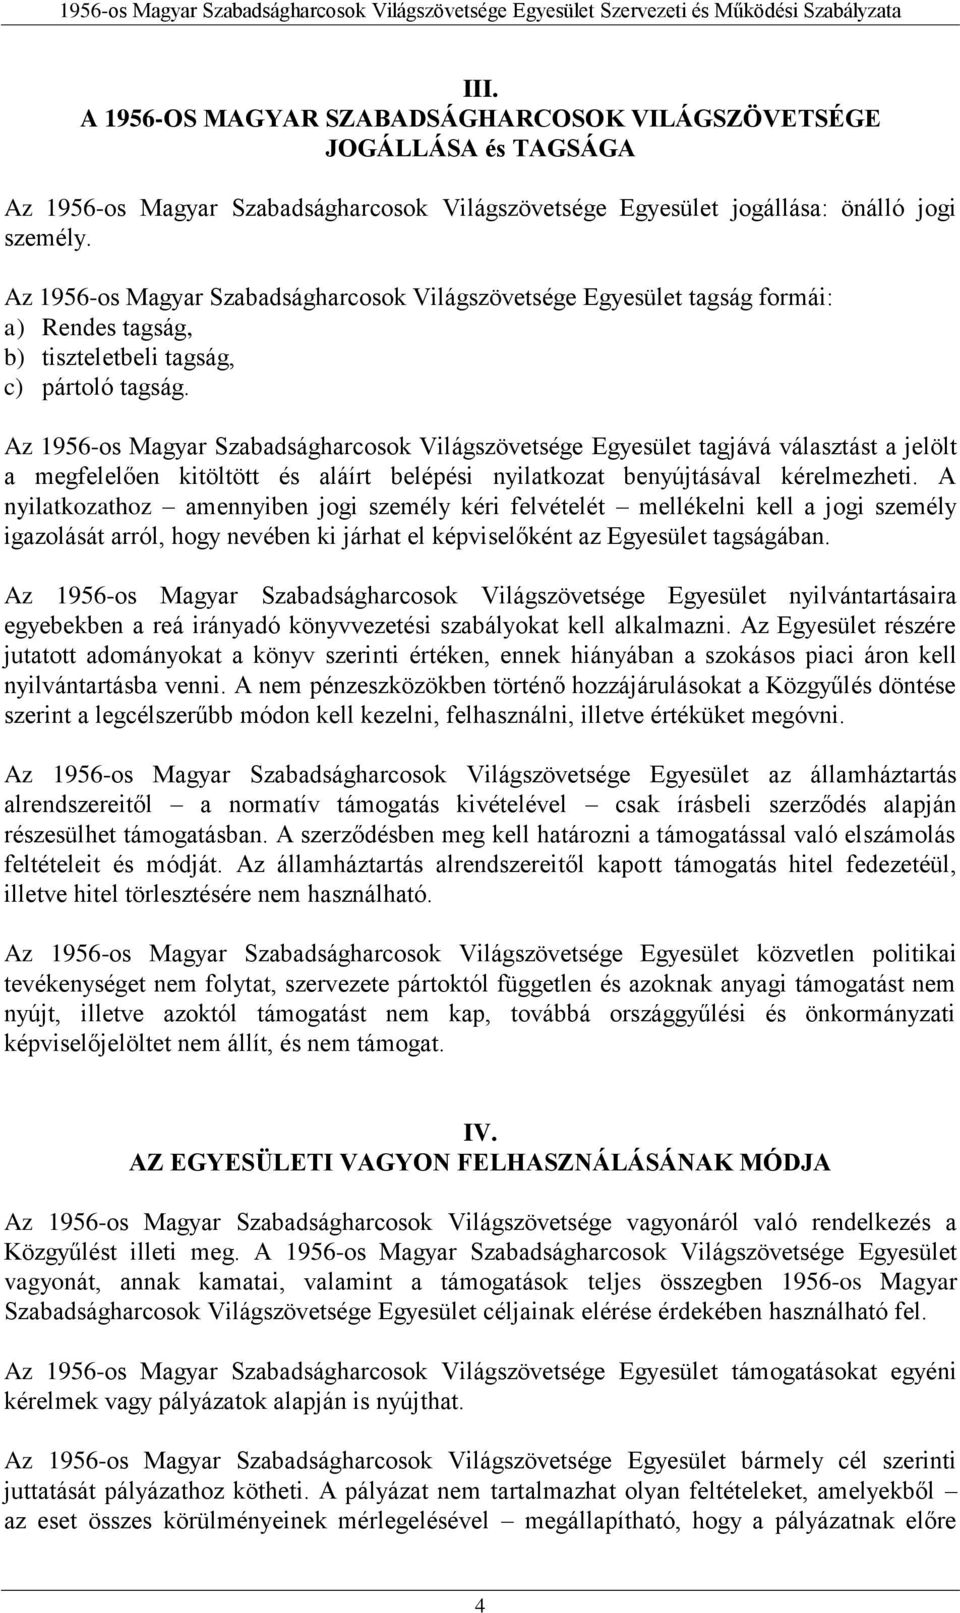 Az 1956-os Magyar Szabadságharcosok Világszövetsége Egyesület tagjává választást a jelölt a megfelelően kitöltött és aláírt belépési nyilatkozat benyújtásával kérelmezheti.